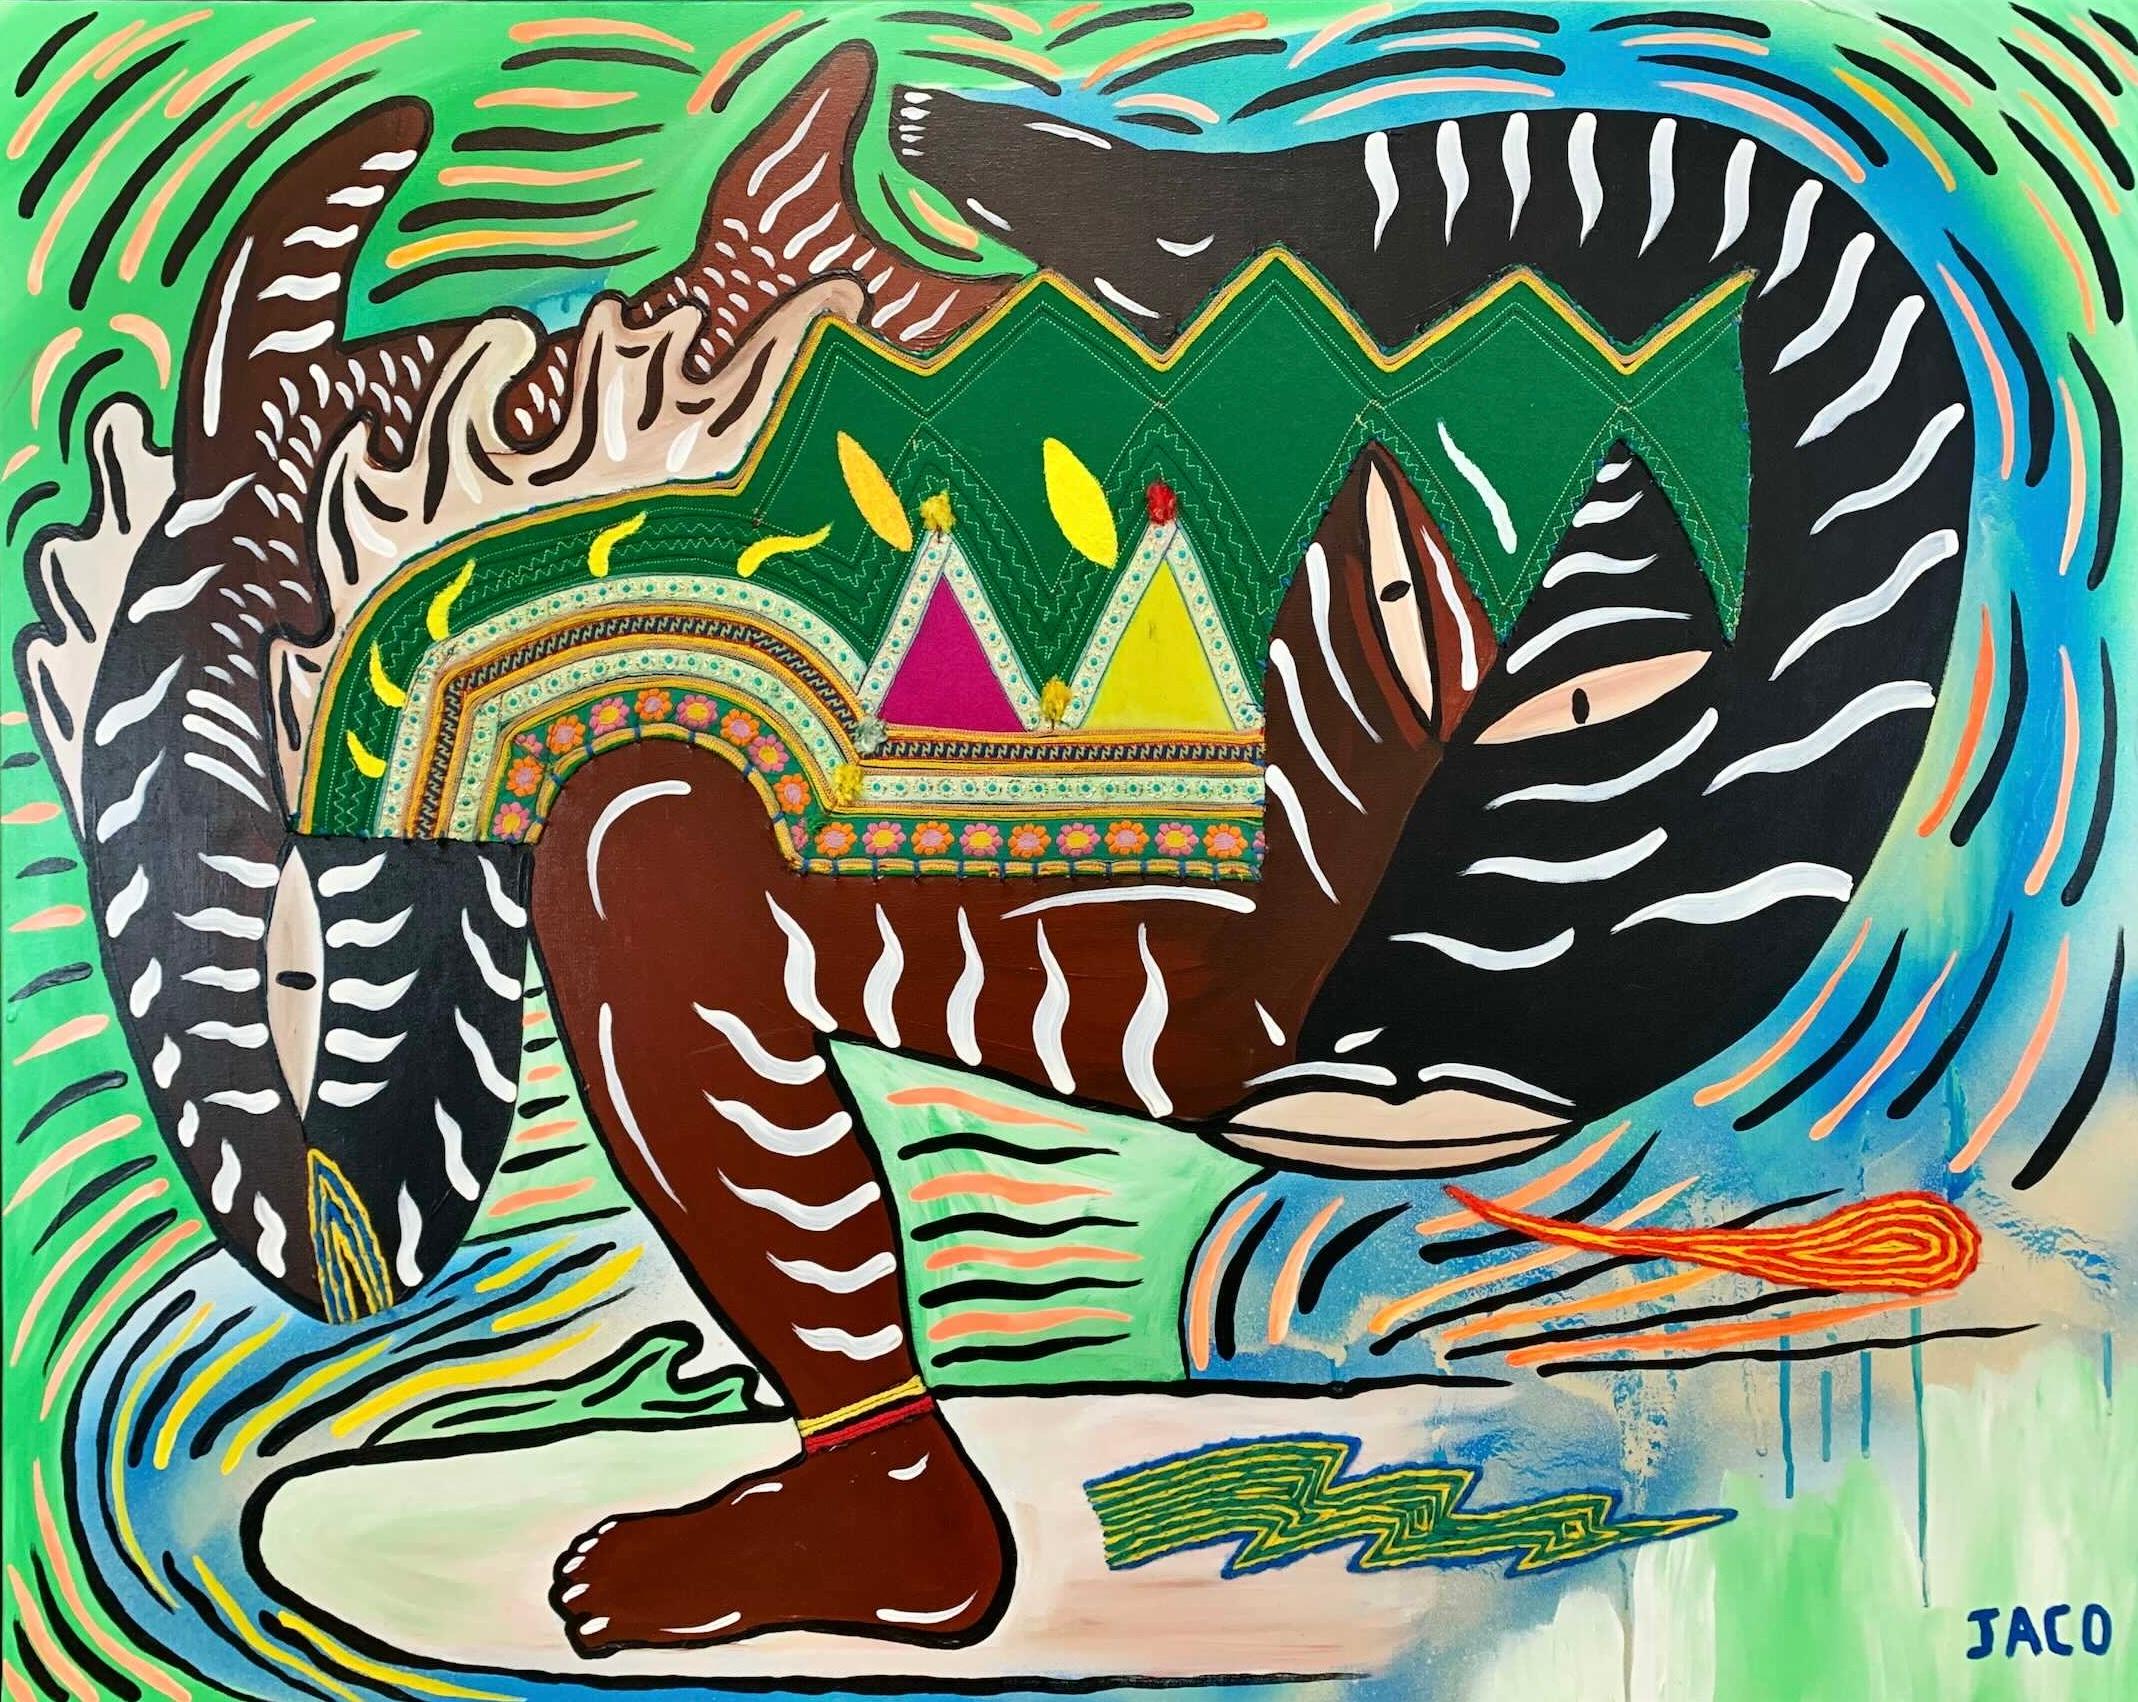 Le surfeur de la dernière vague Philippe Jacq peinture d'art contemporaine du XXIe siècle